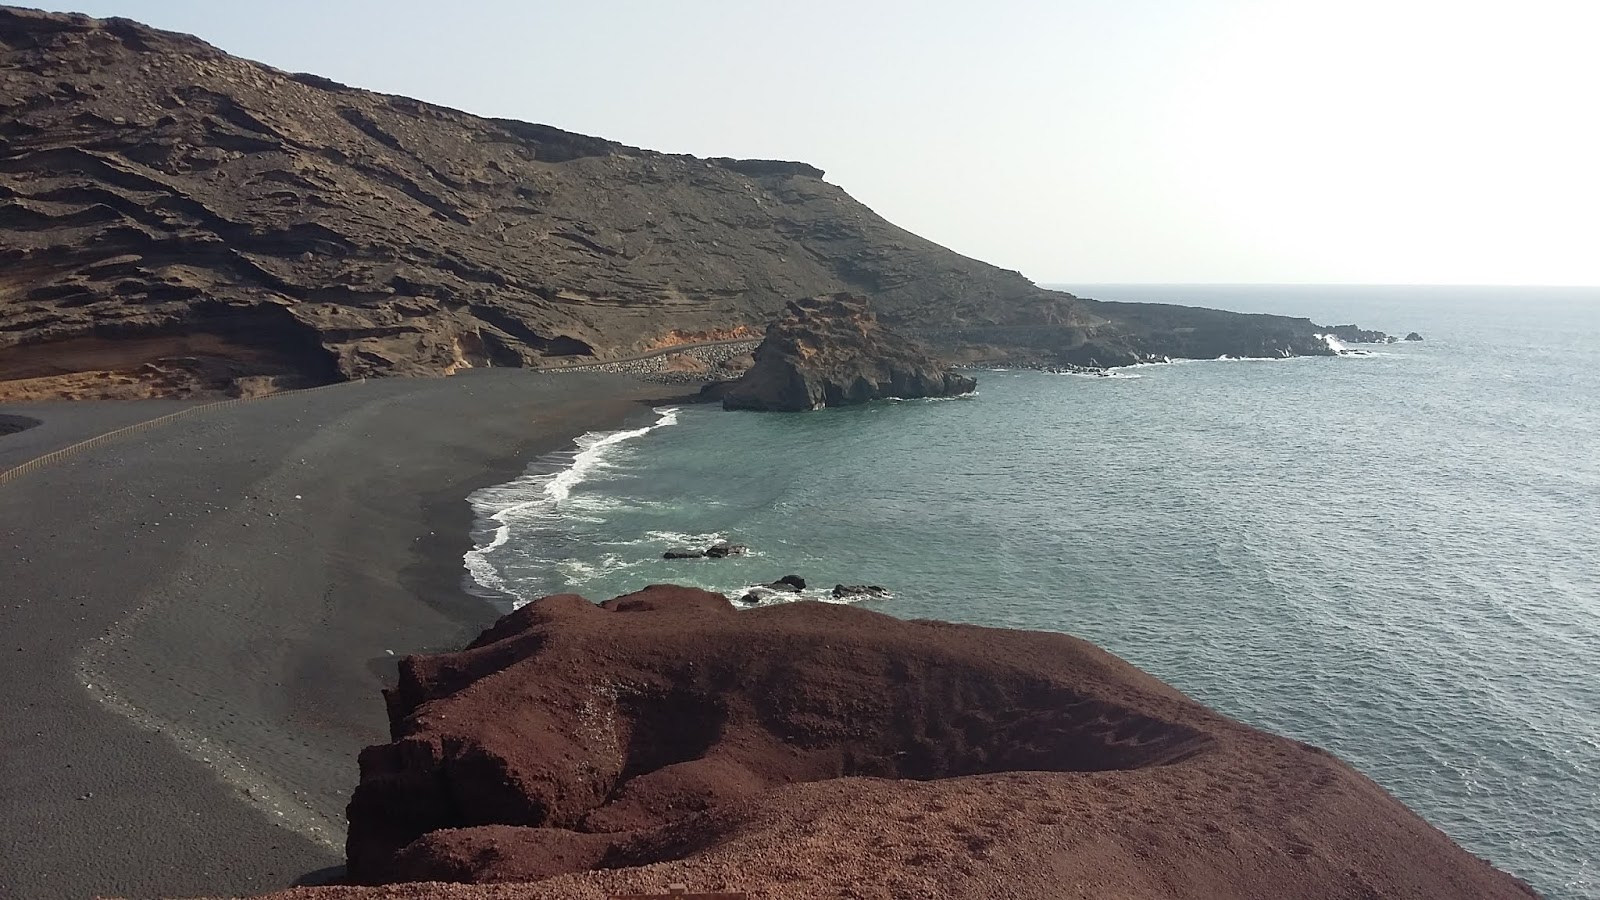 Explorando El Golfo - Lanzarote, playas y pateos (4)